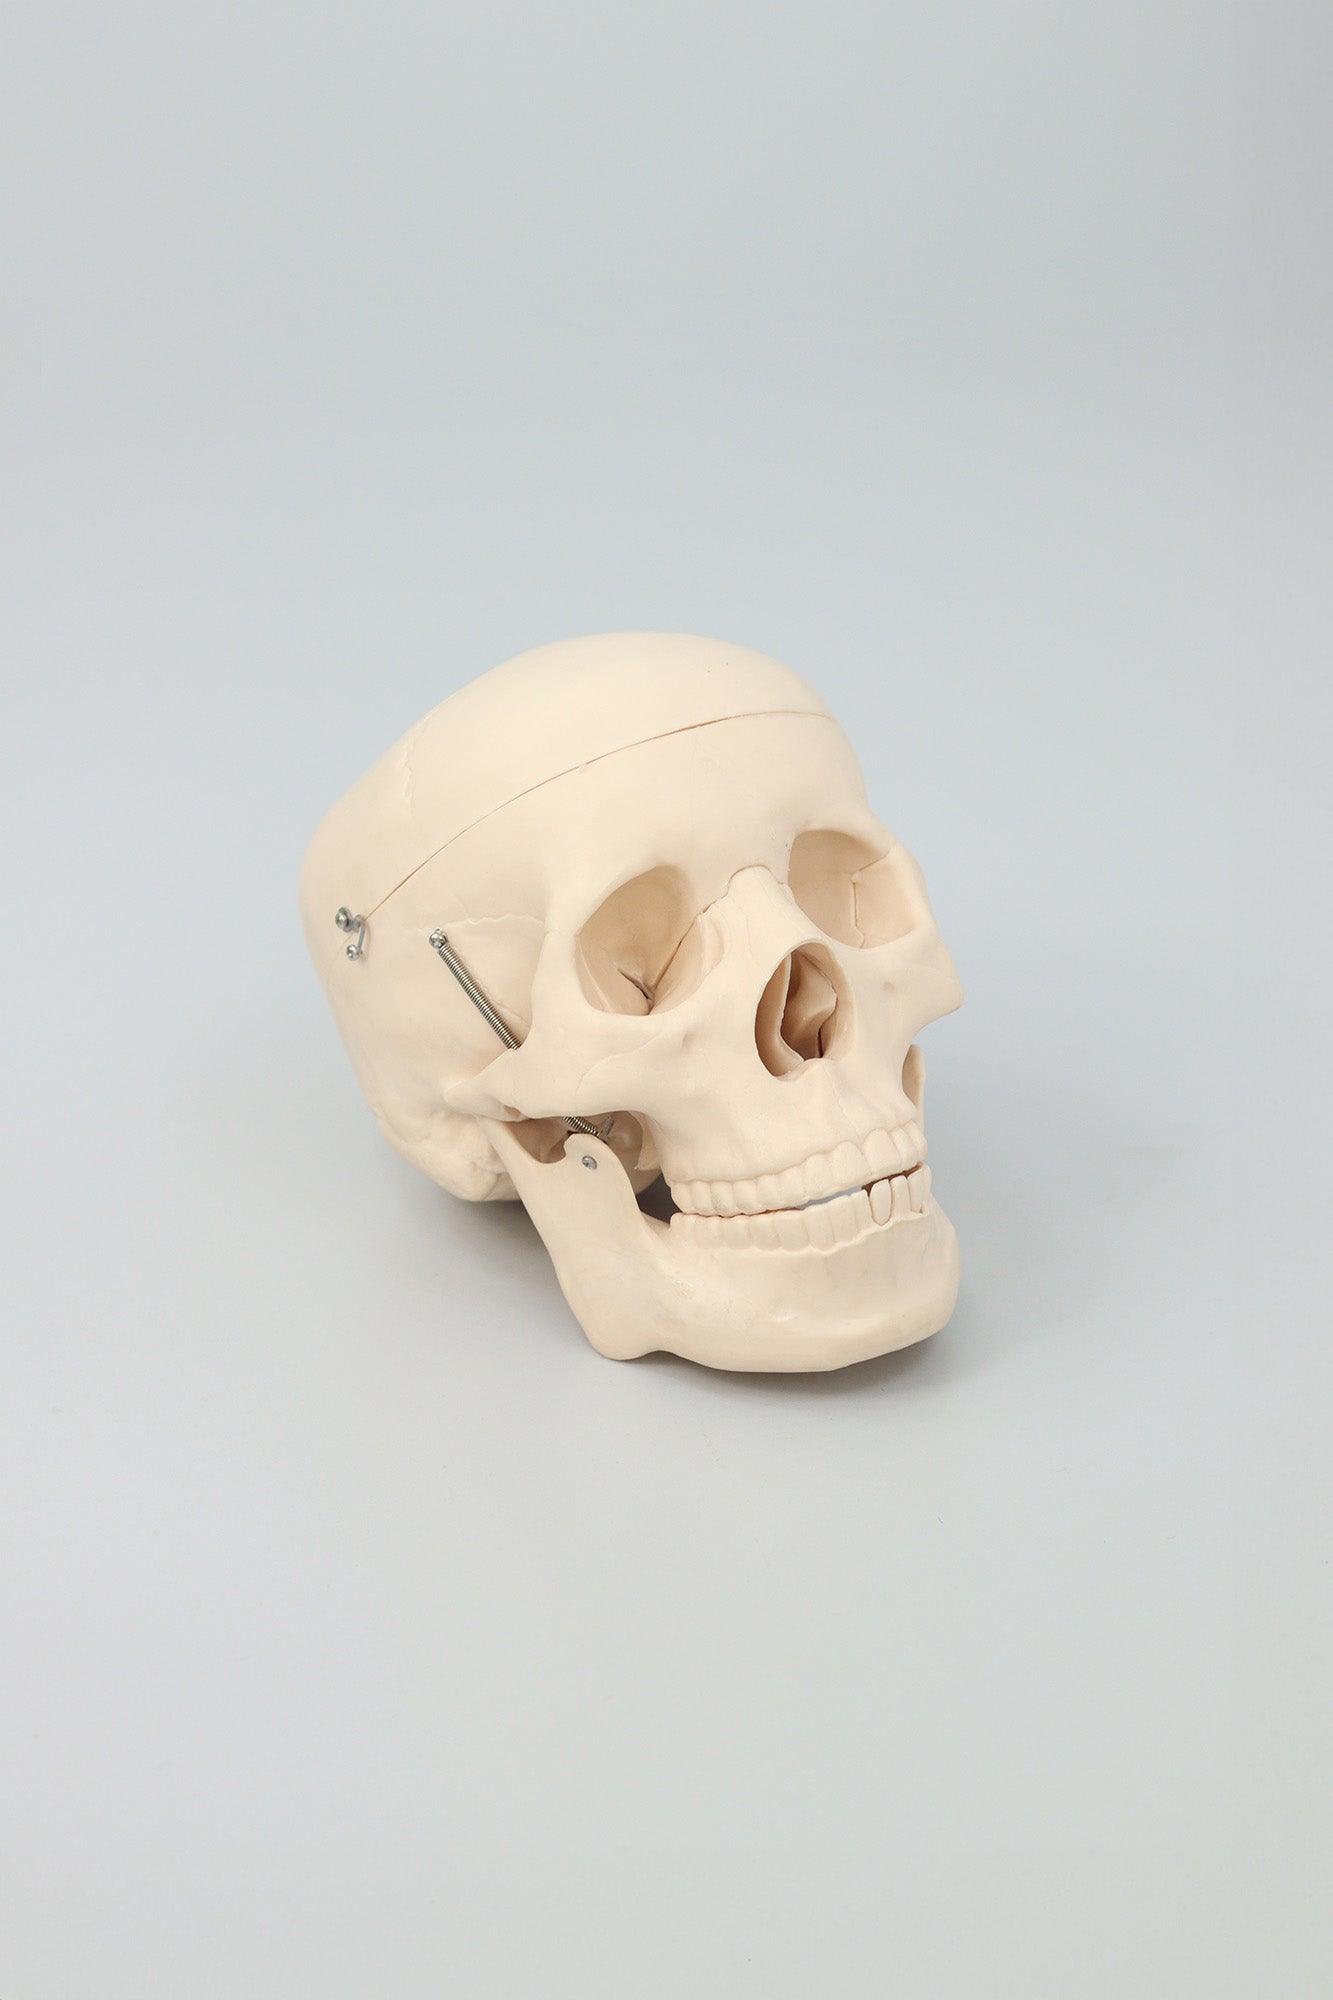 Anatomical Plastic Skull Model